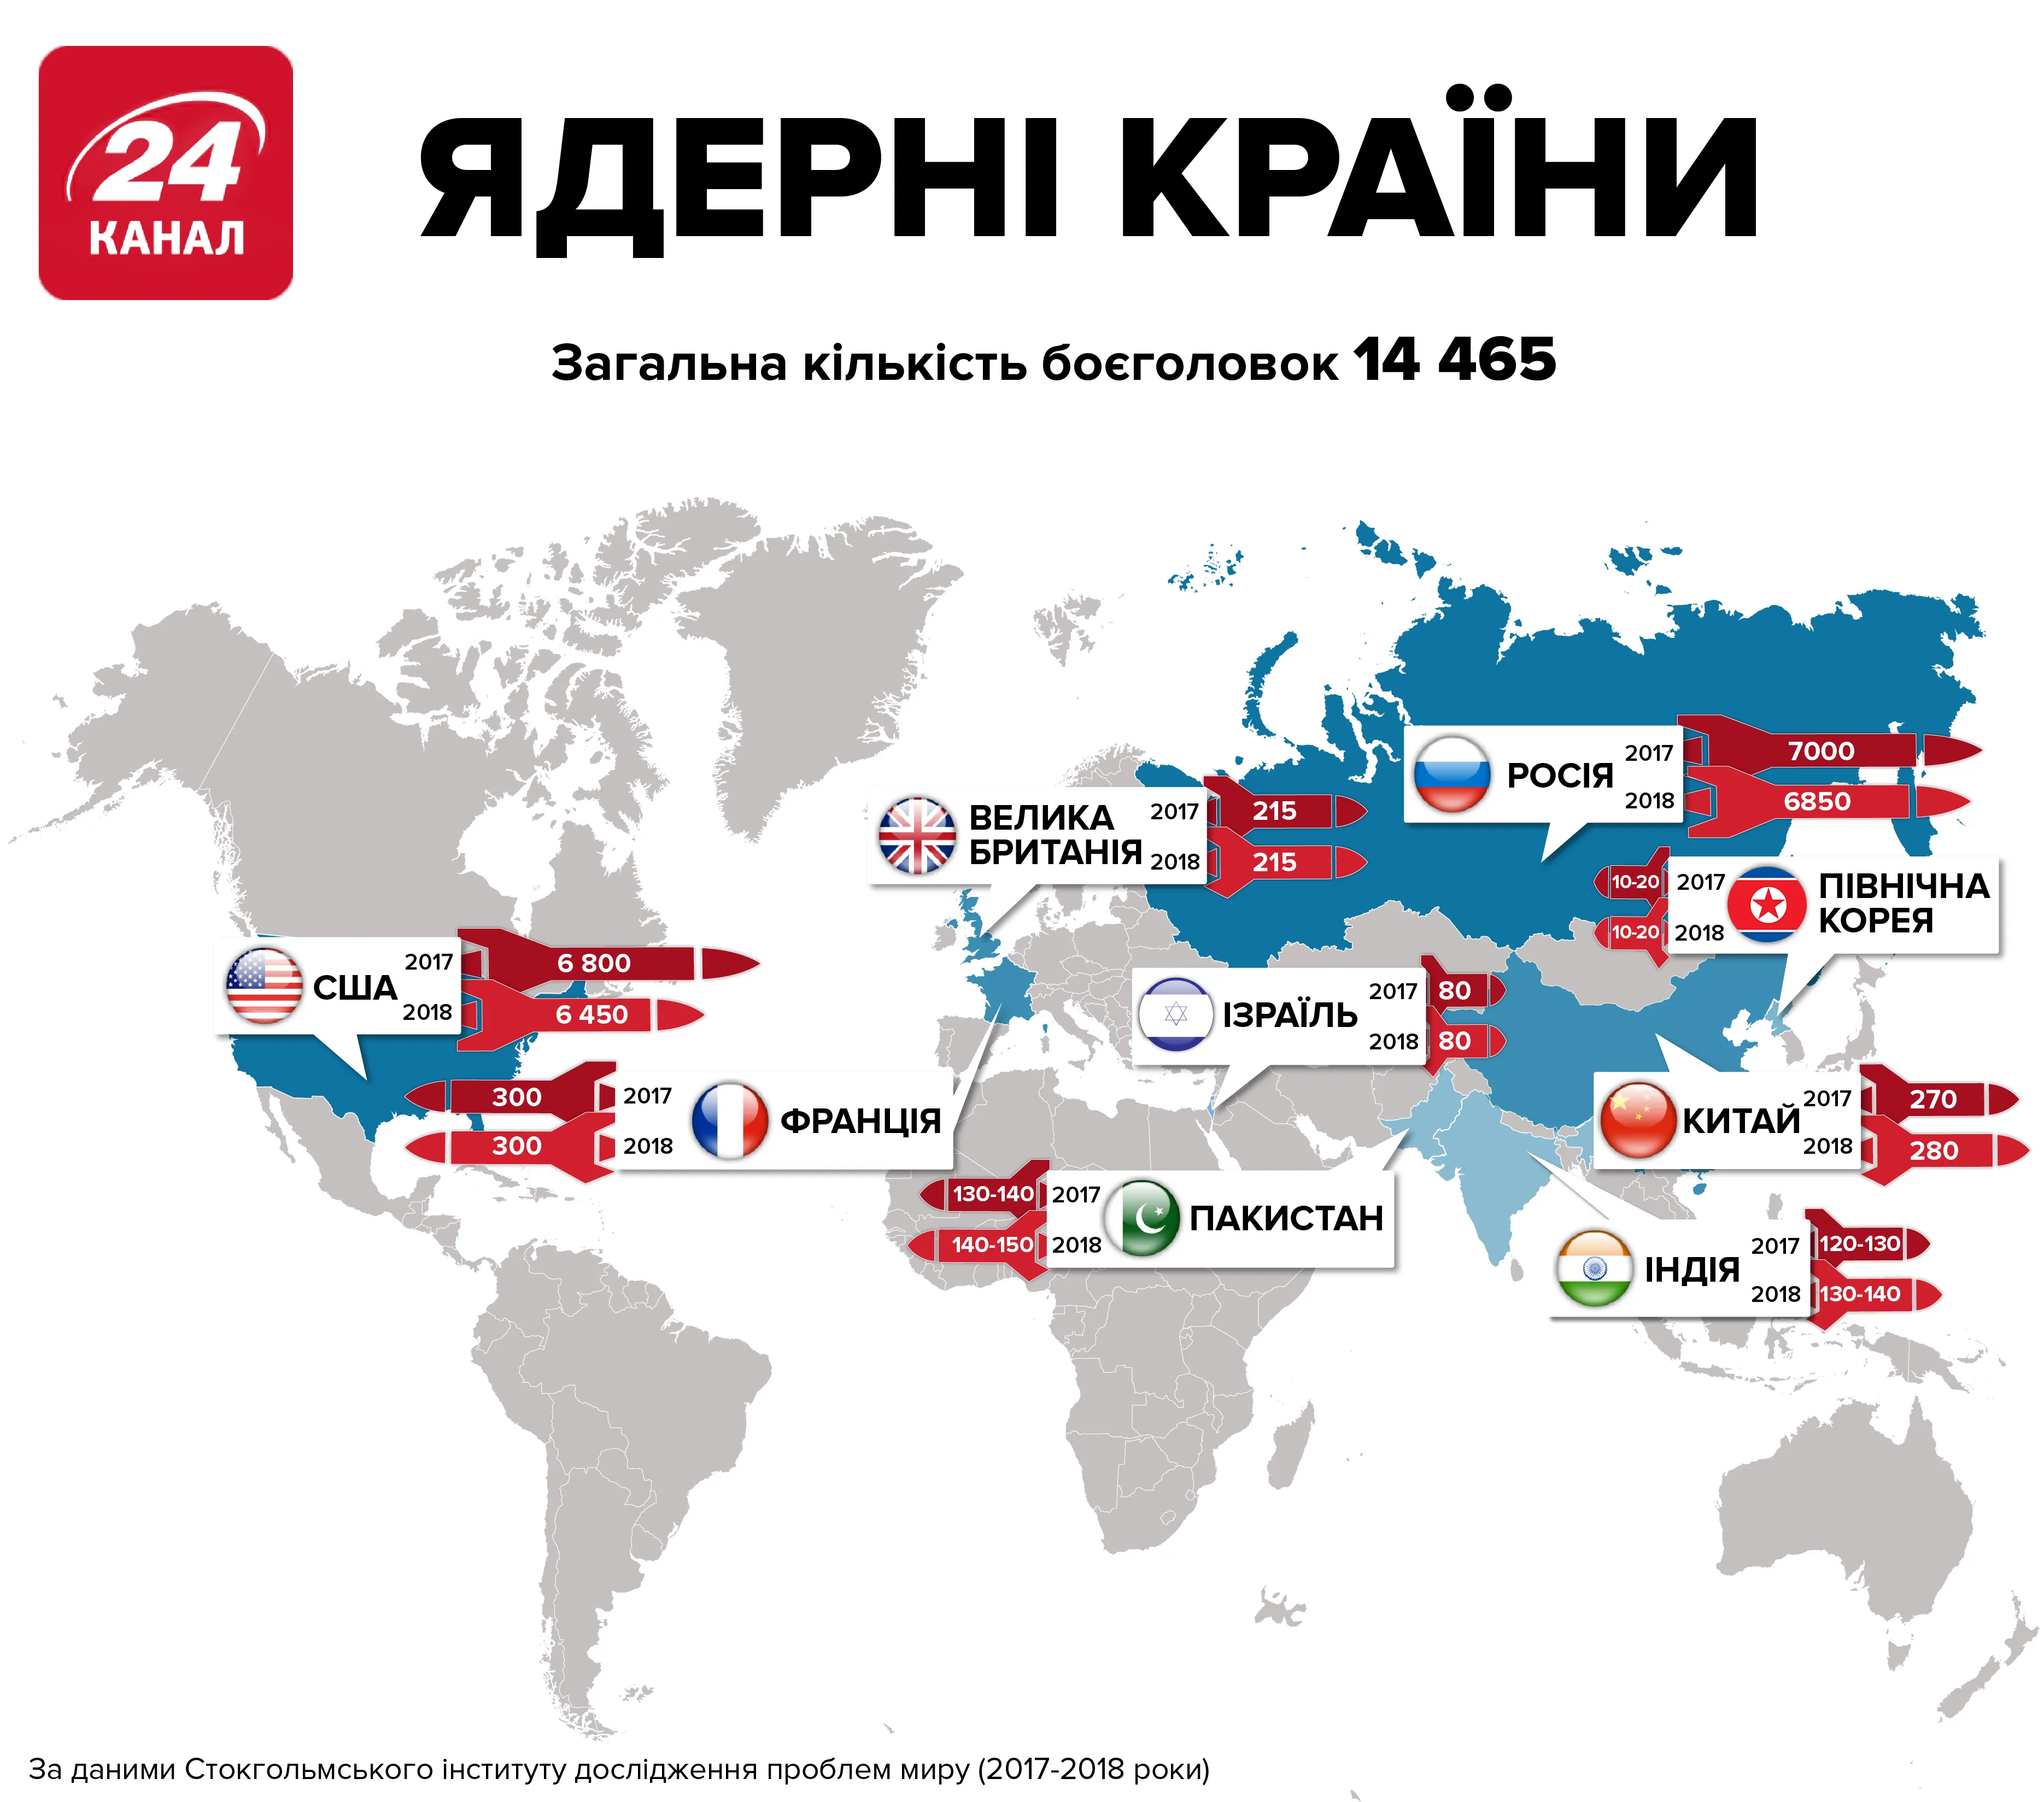 ядерні країни світу список ядерна зброя ядерні боєголовки Росія